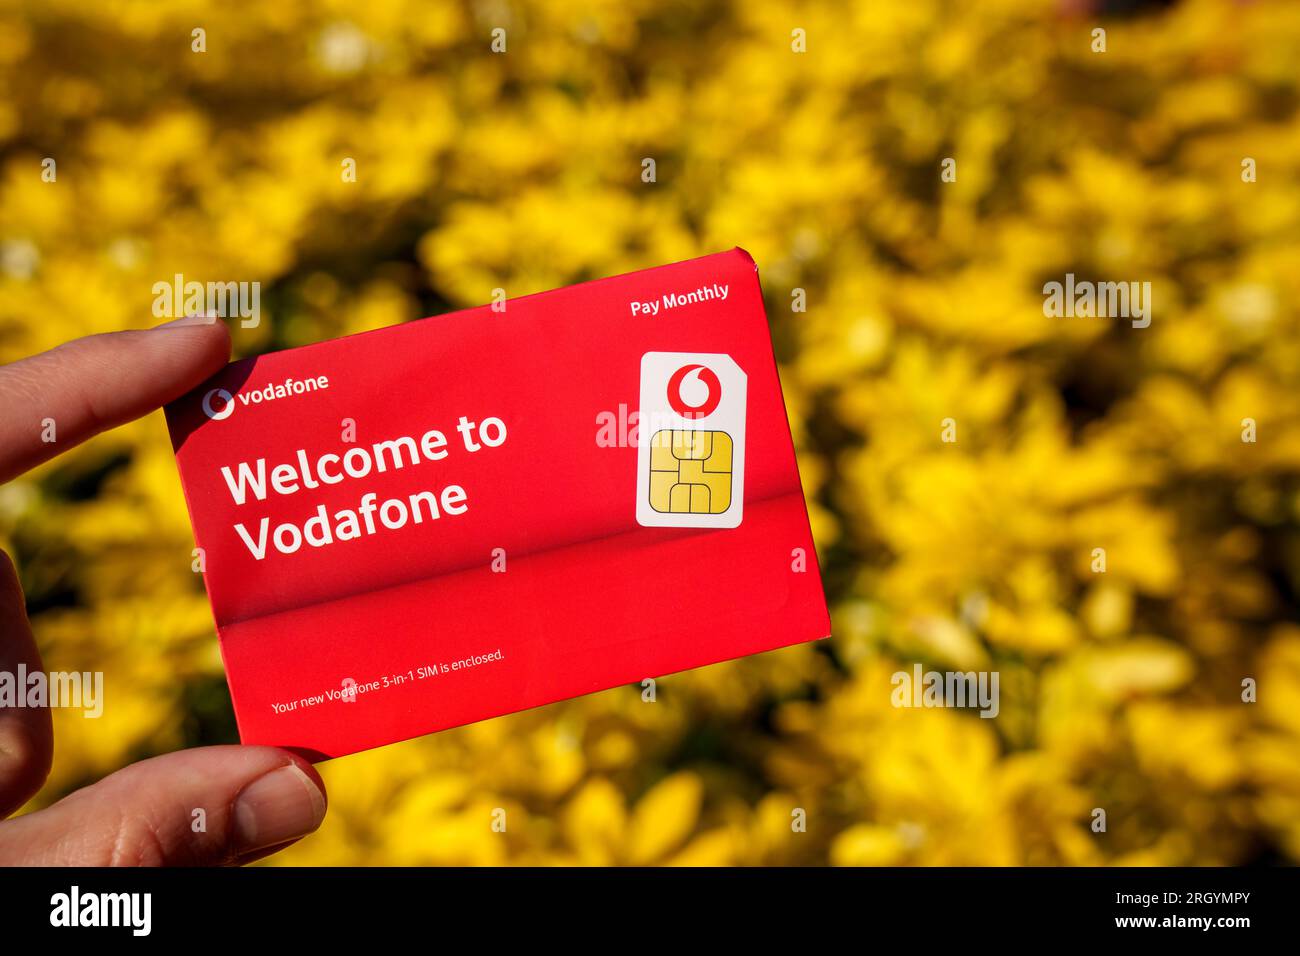 Busta per scheda SIM Vodafone. Immagine ravvicinata con sfondo sfocato e spazio di copia. Stafford, Regno Unito, 12 agosto 2023 Foto Stock